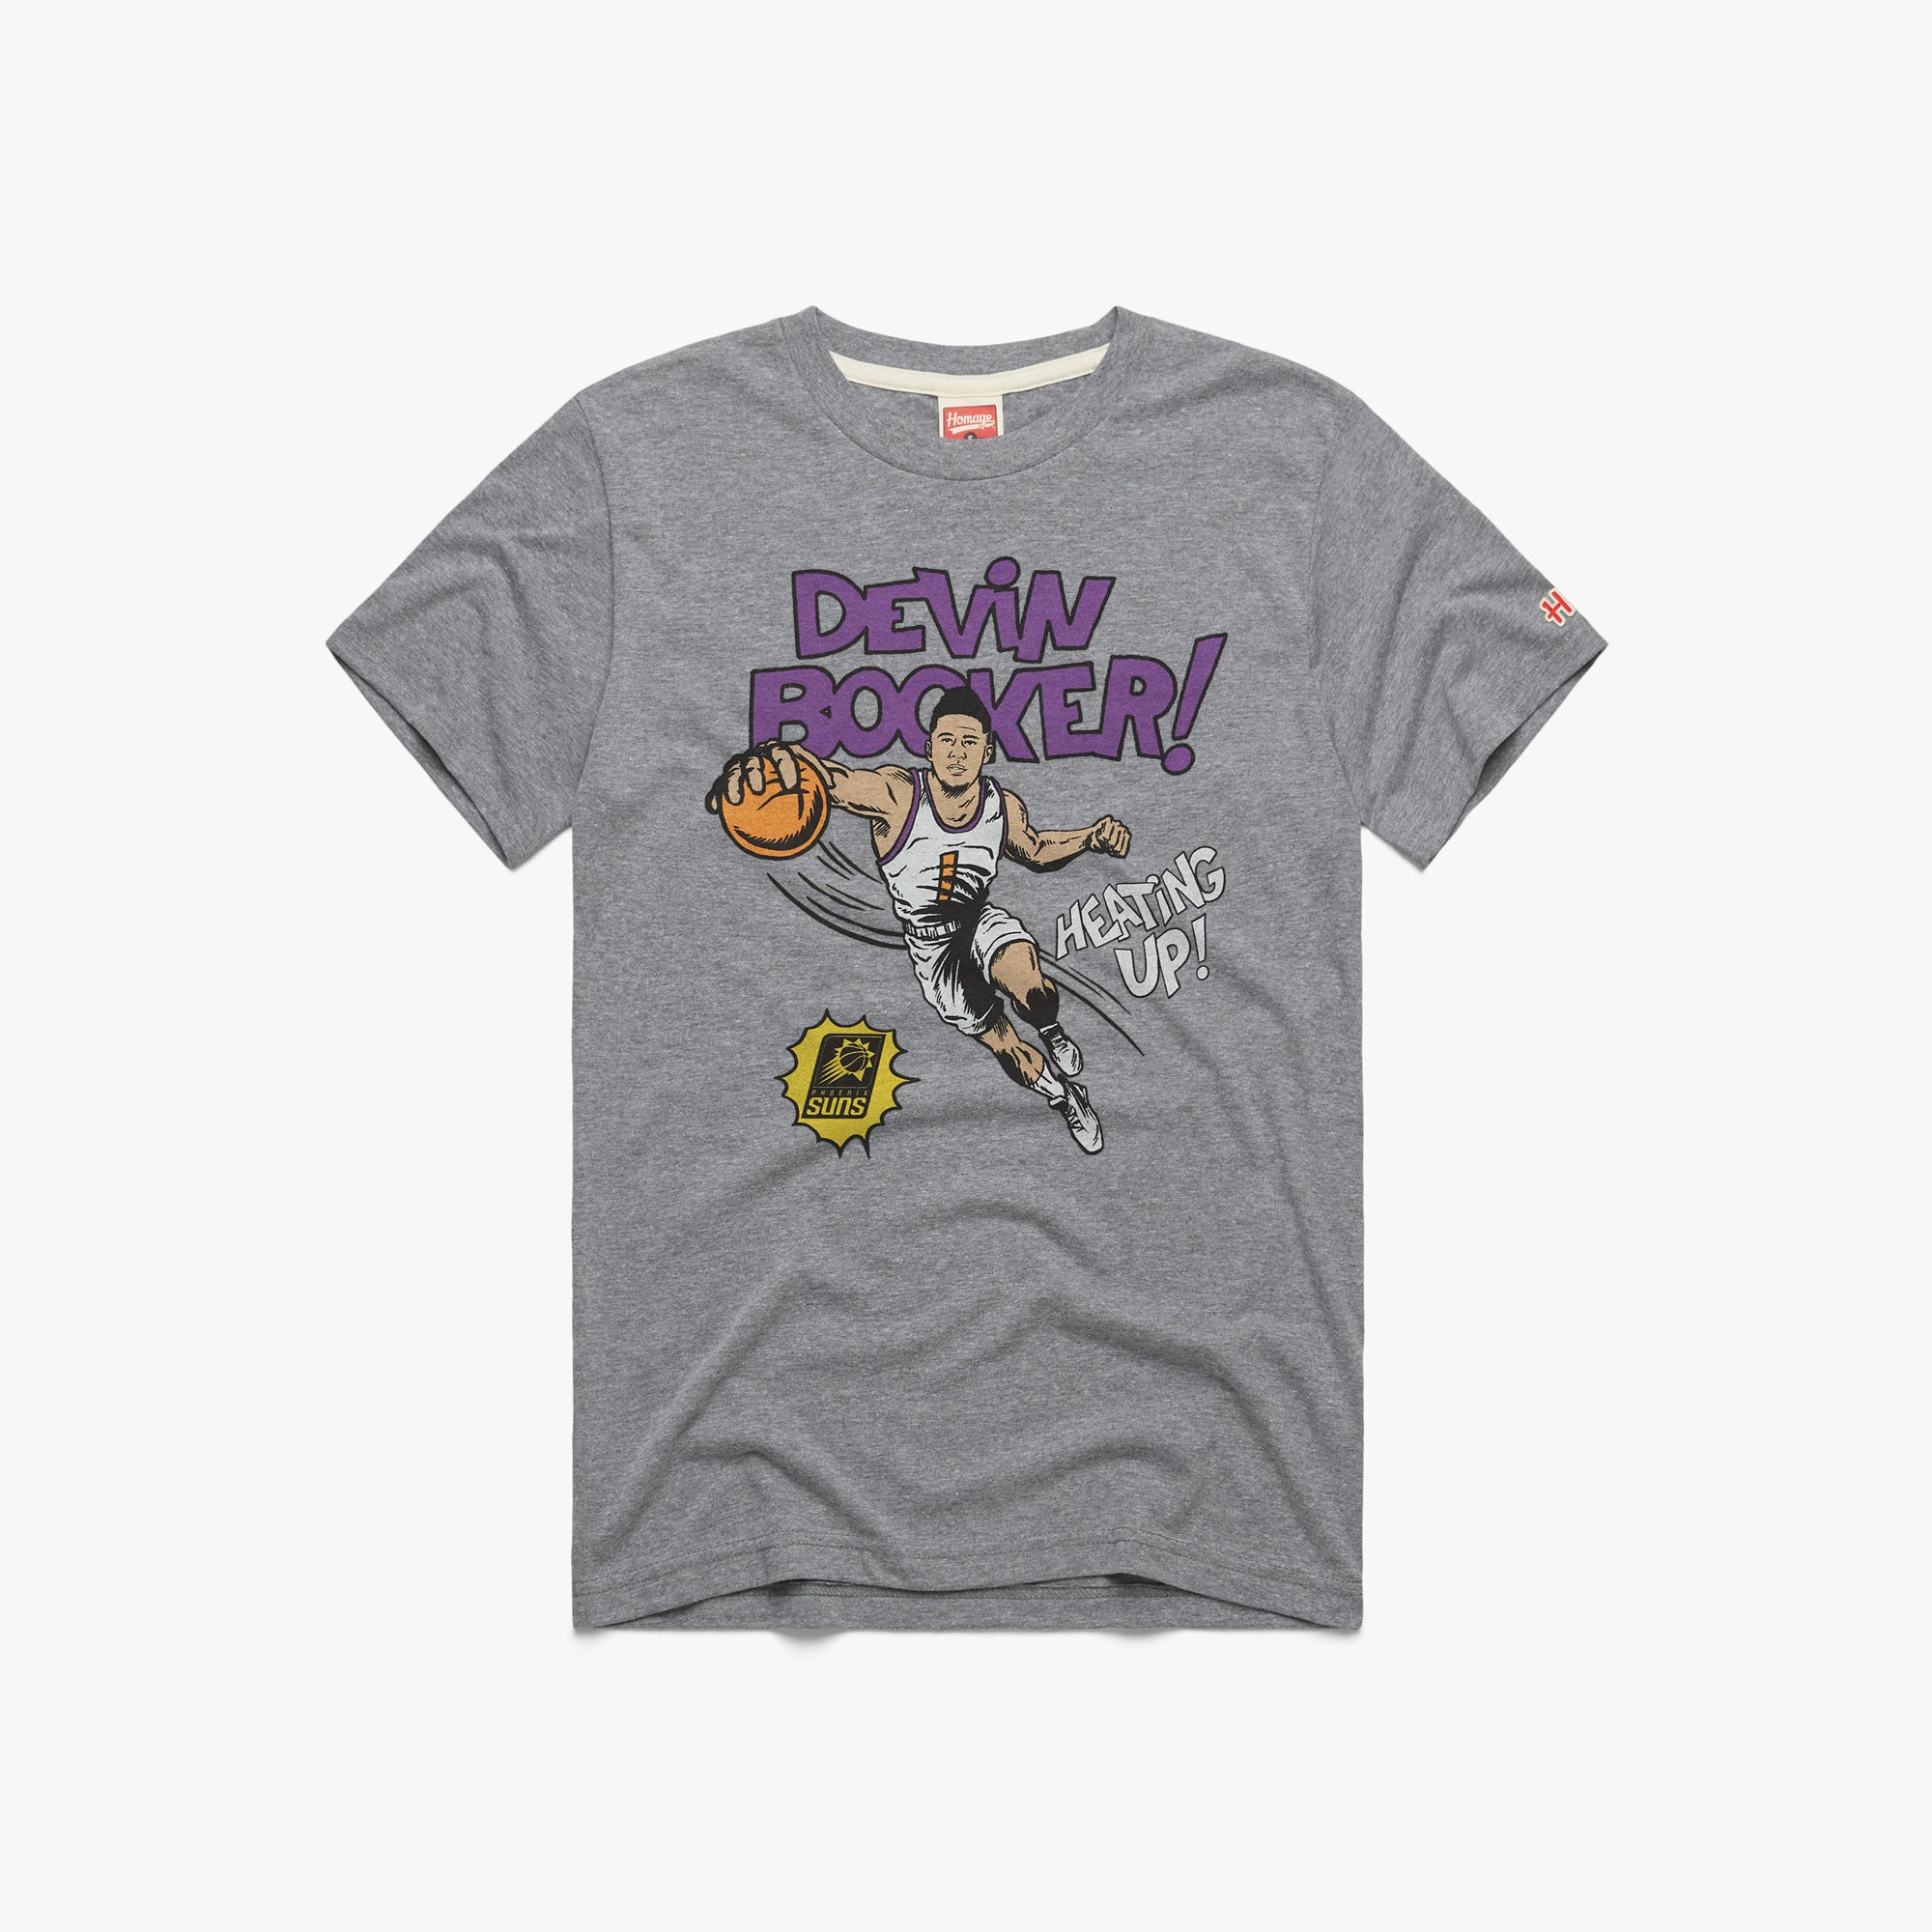 Suns The Final Shot Devin Booker Shirt T-shirt Tee New Cotton Classic Hot  Deals - AliExpress